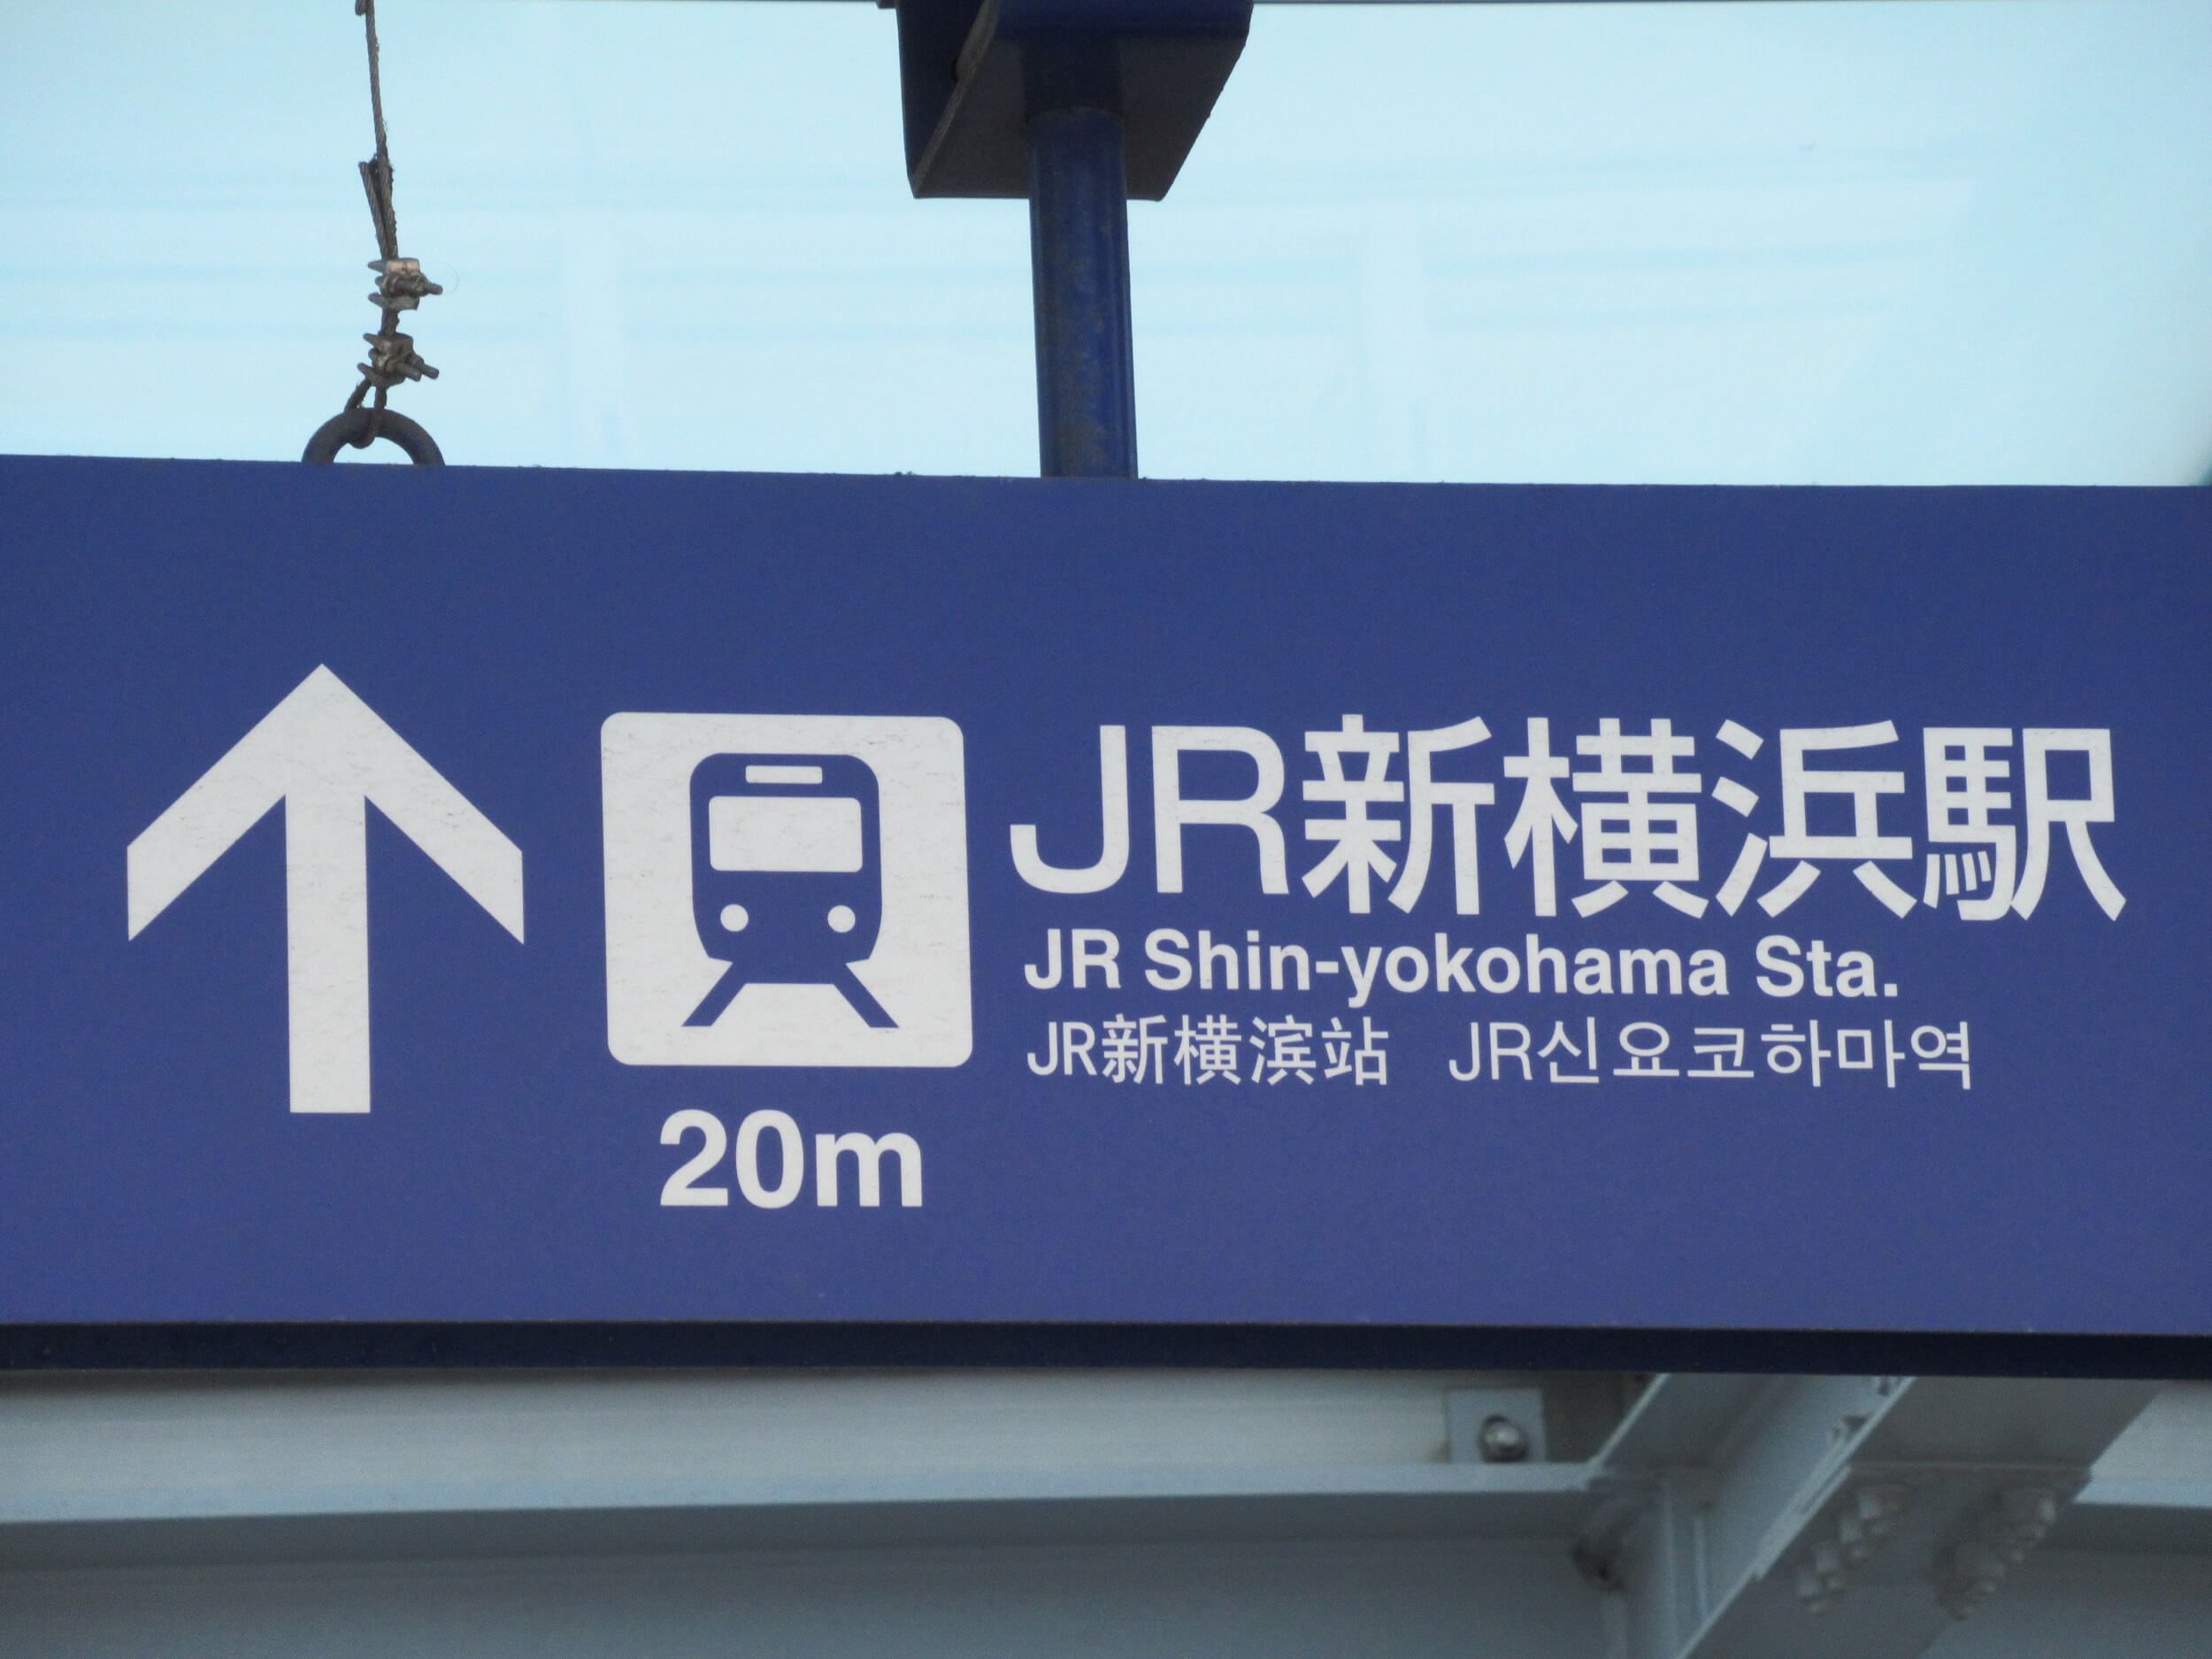 shinyokohama Station・Guide plate